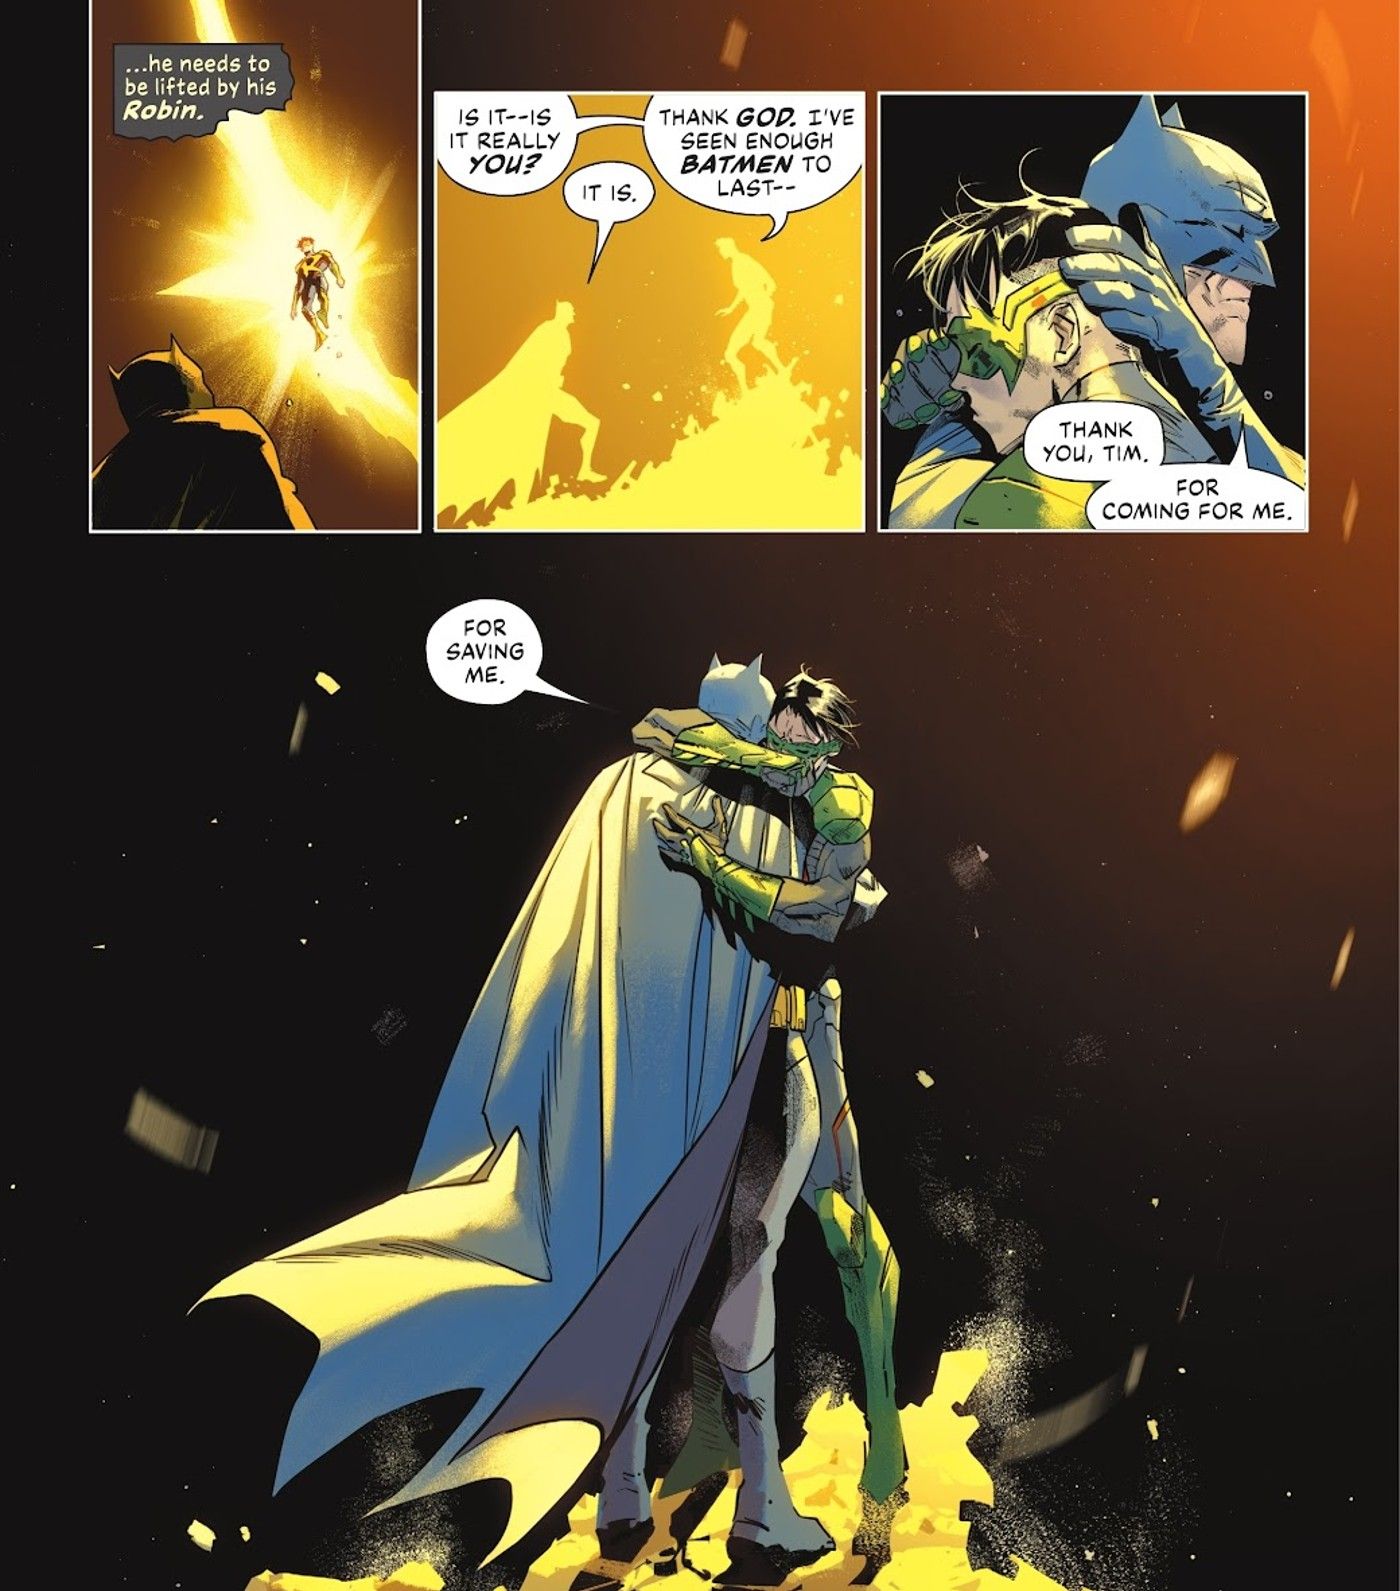 Quadrinhos: Robin Tim Drake encontra Batman e eles se abraçam.